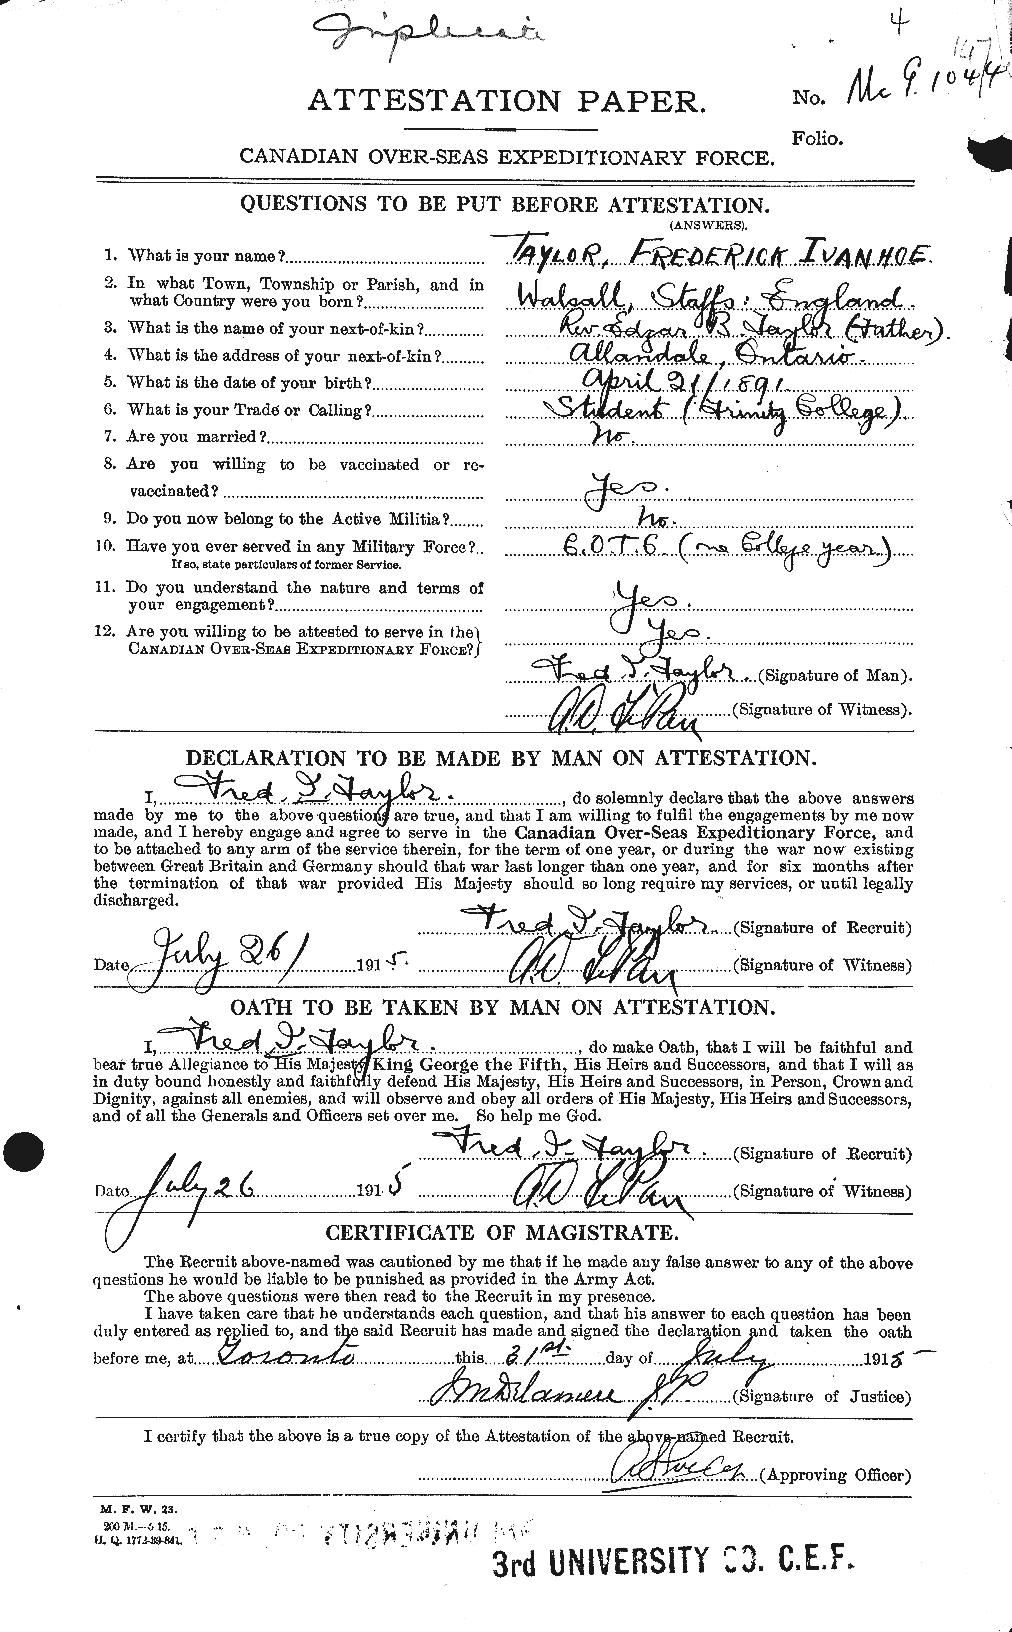 Dossiers du Personnel de la Première Guerre mondiale - CEC 625807a